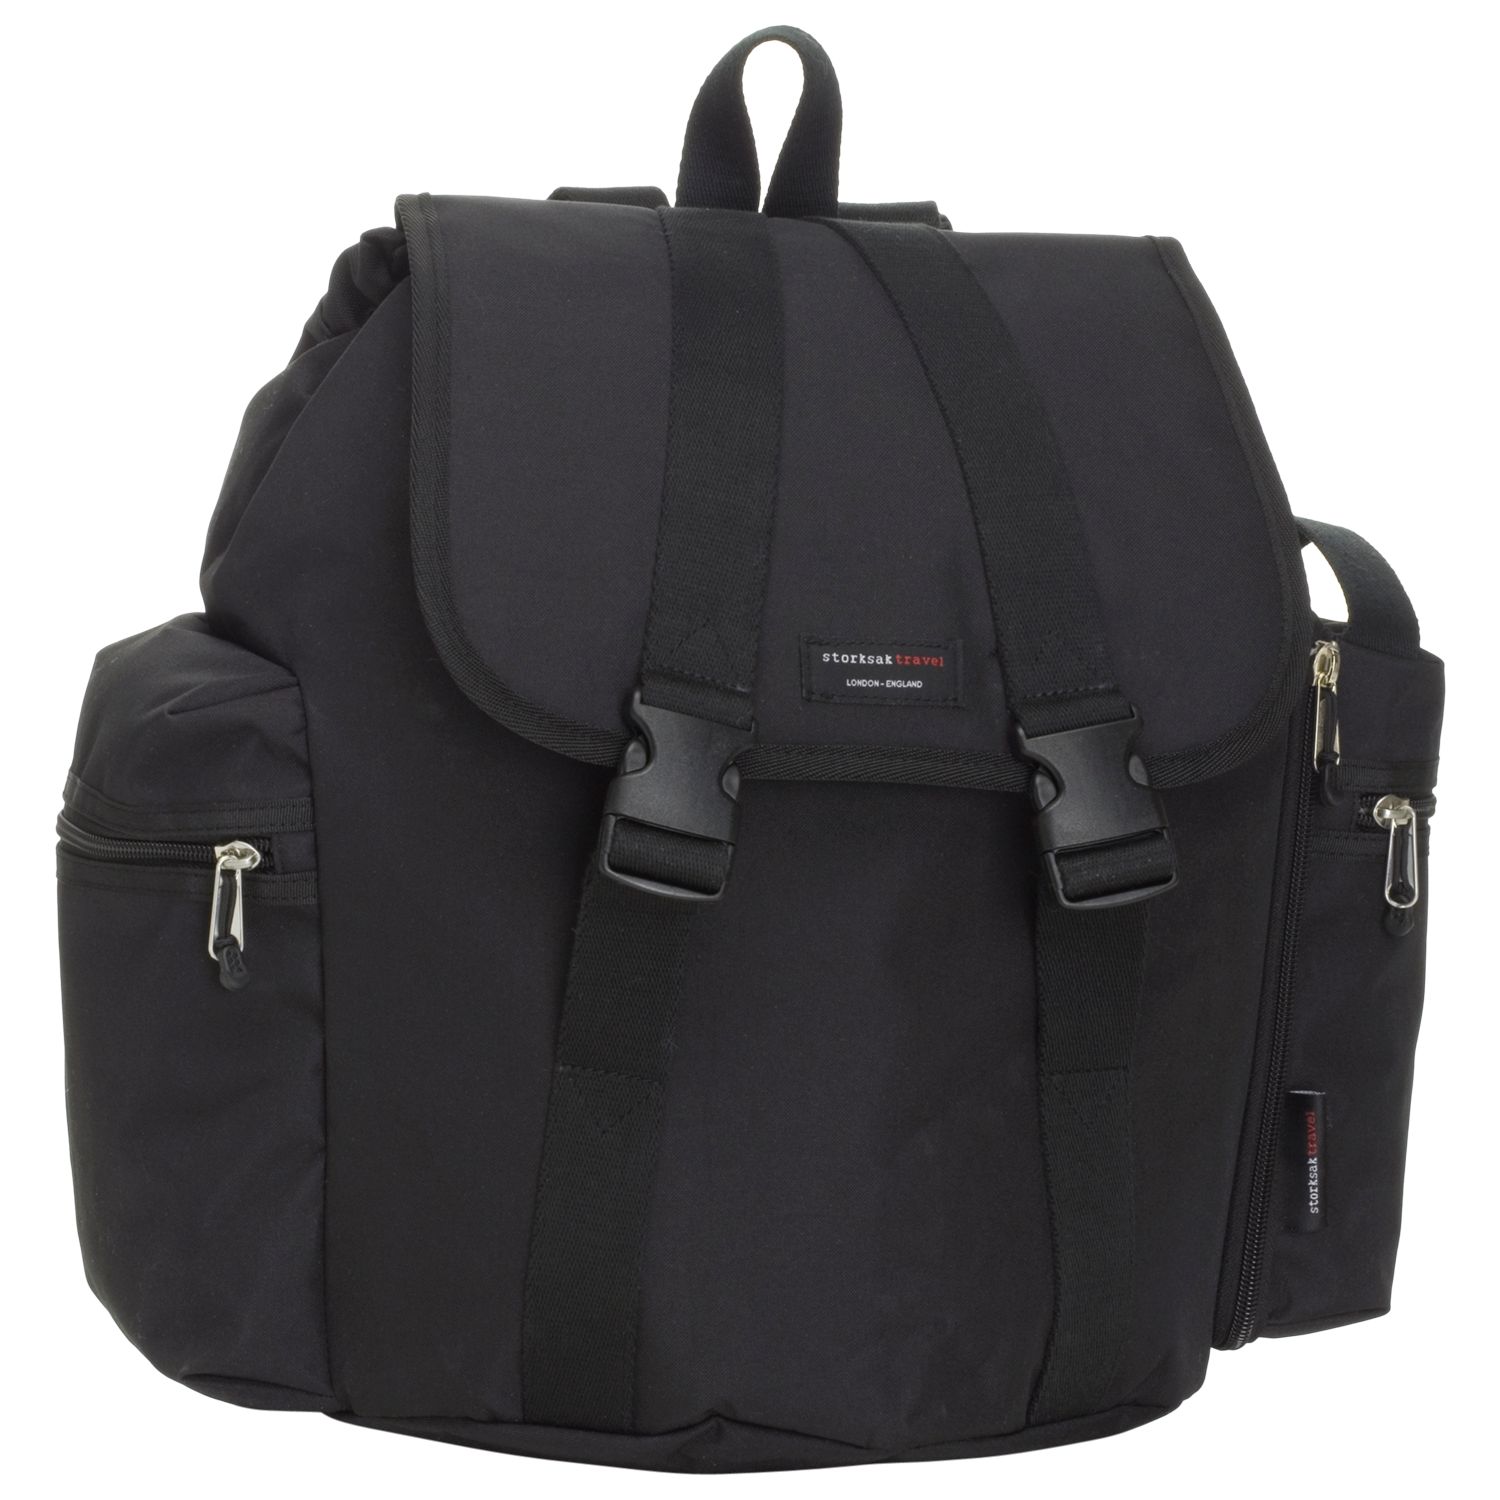 Storksak Travel Backpack Bag, Black